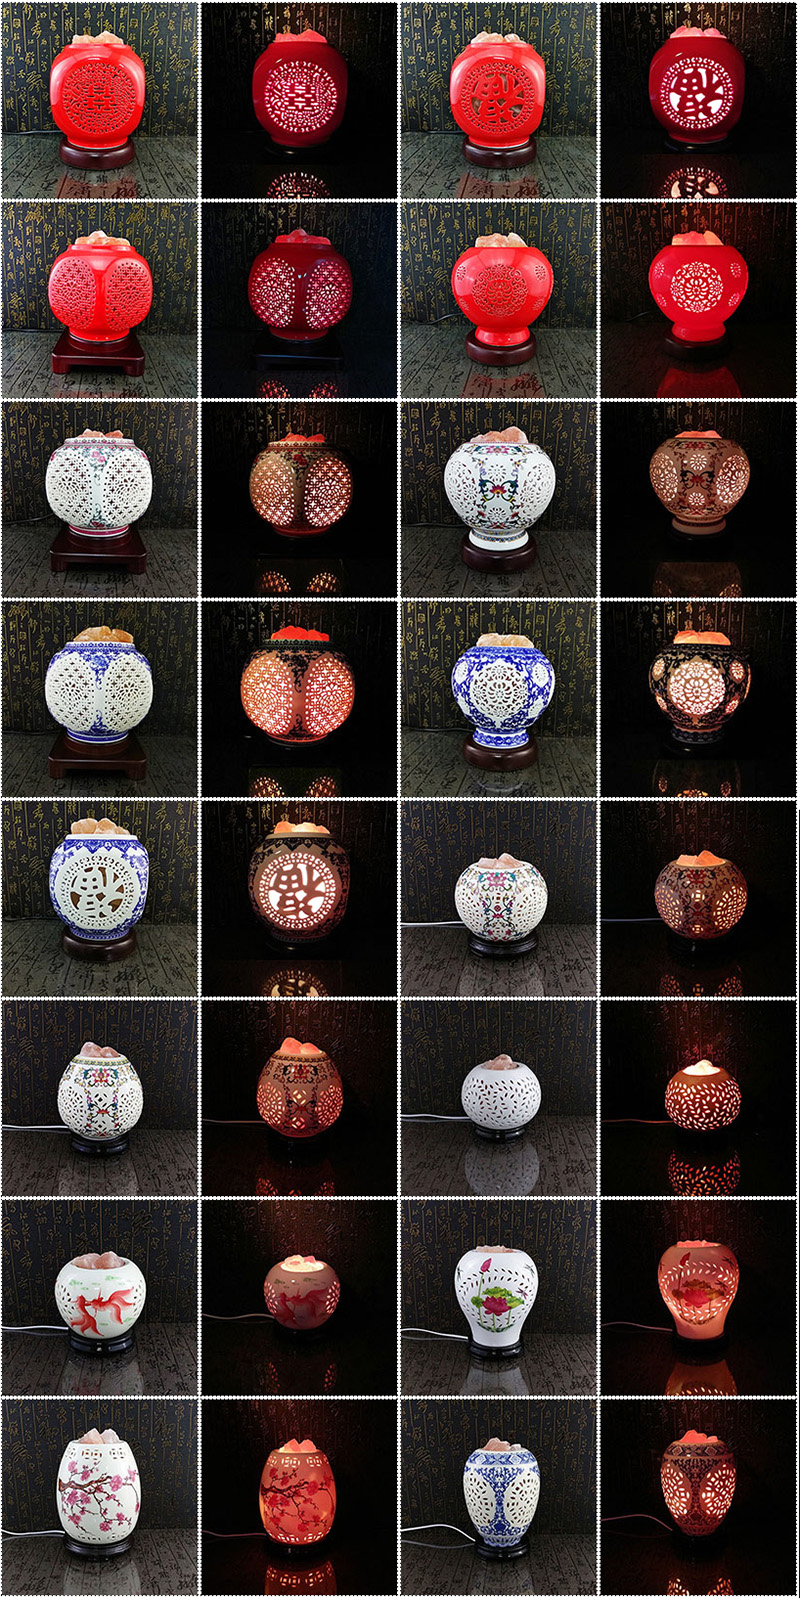 晶麗鹽燈-3~30公斤💯天然水晶玫瑰鹽燈 夜燈 床頭燈🎀含鹽燈+底座+電線+燈泡 整組